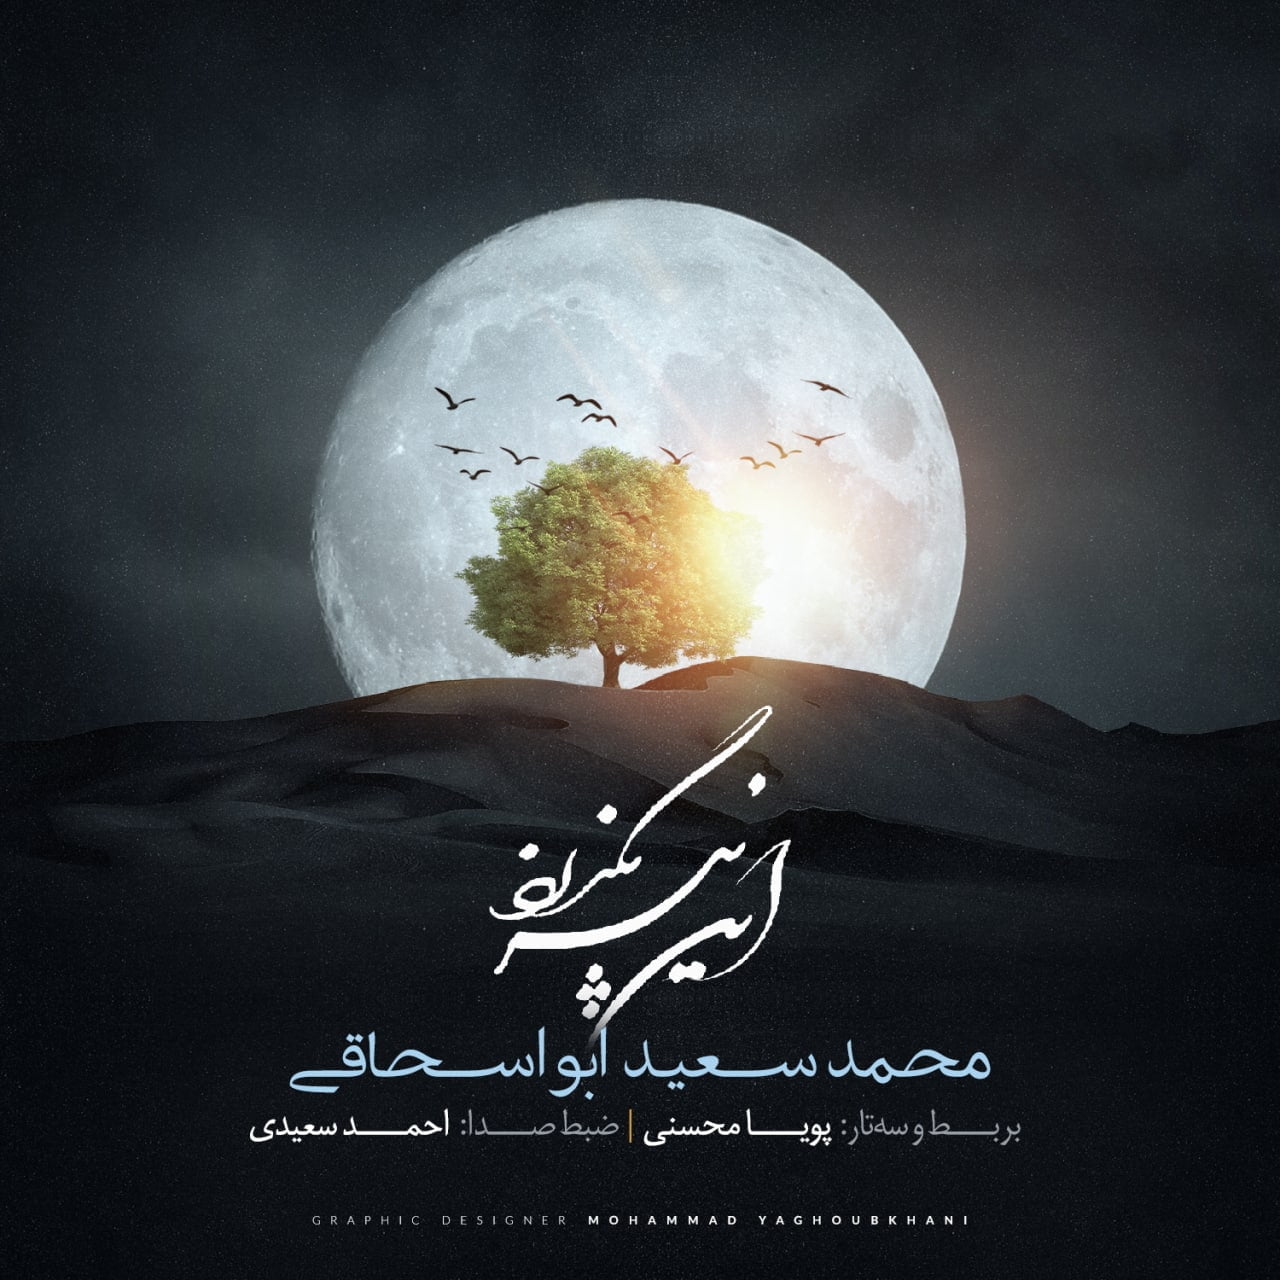 دانلود آهنگ جدید محمد سعید ابواسحاقی با عنوان این نیز بگذرد